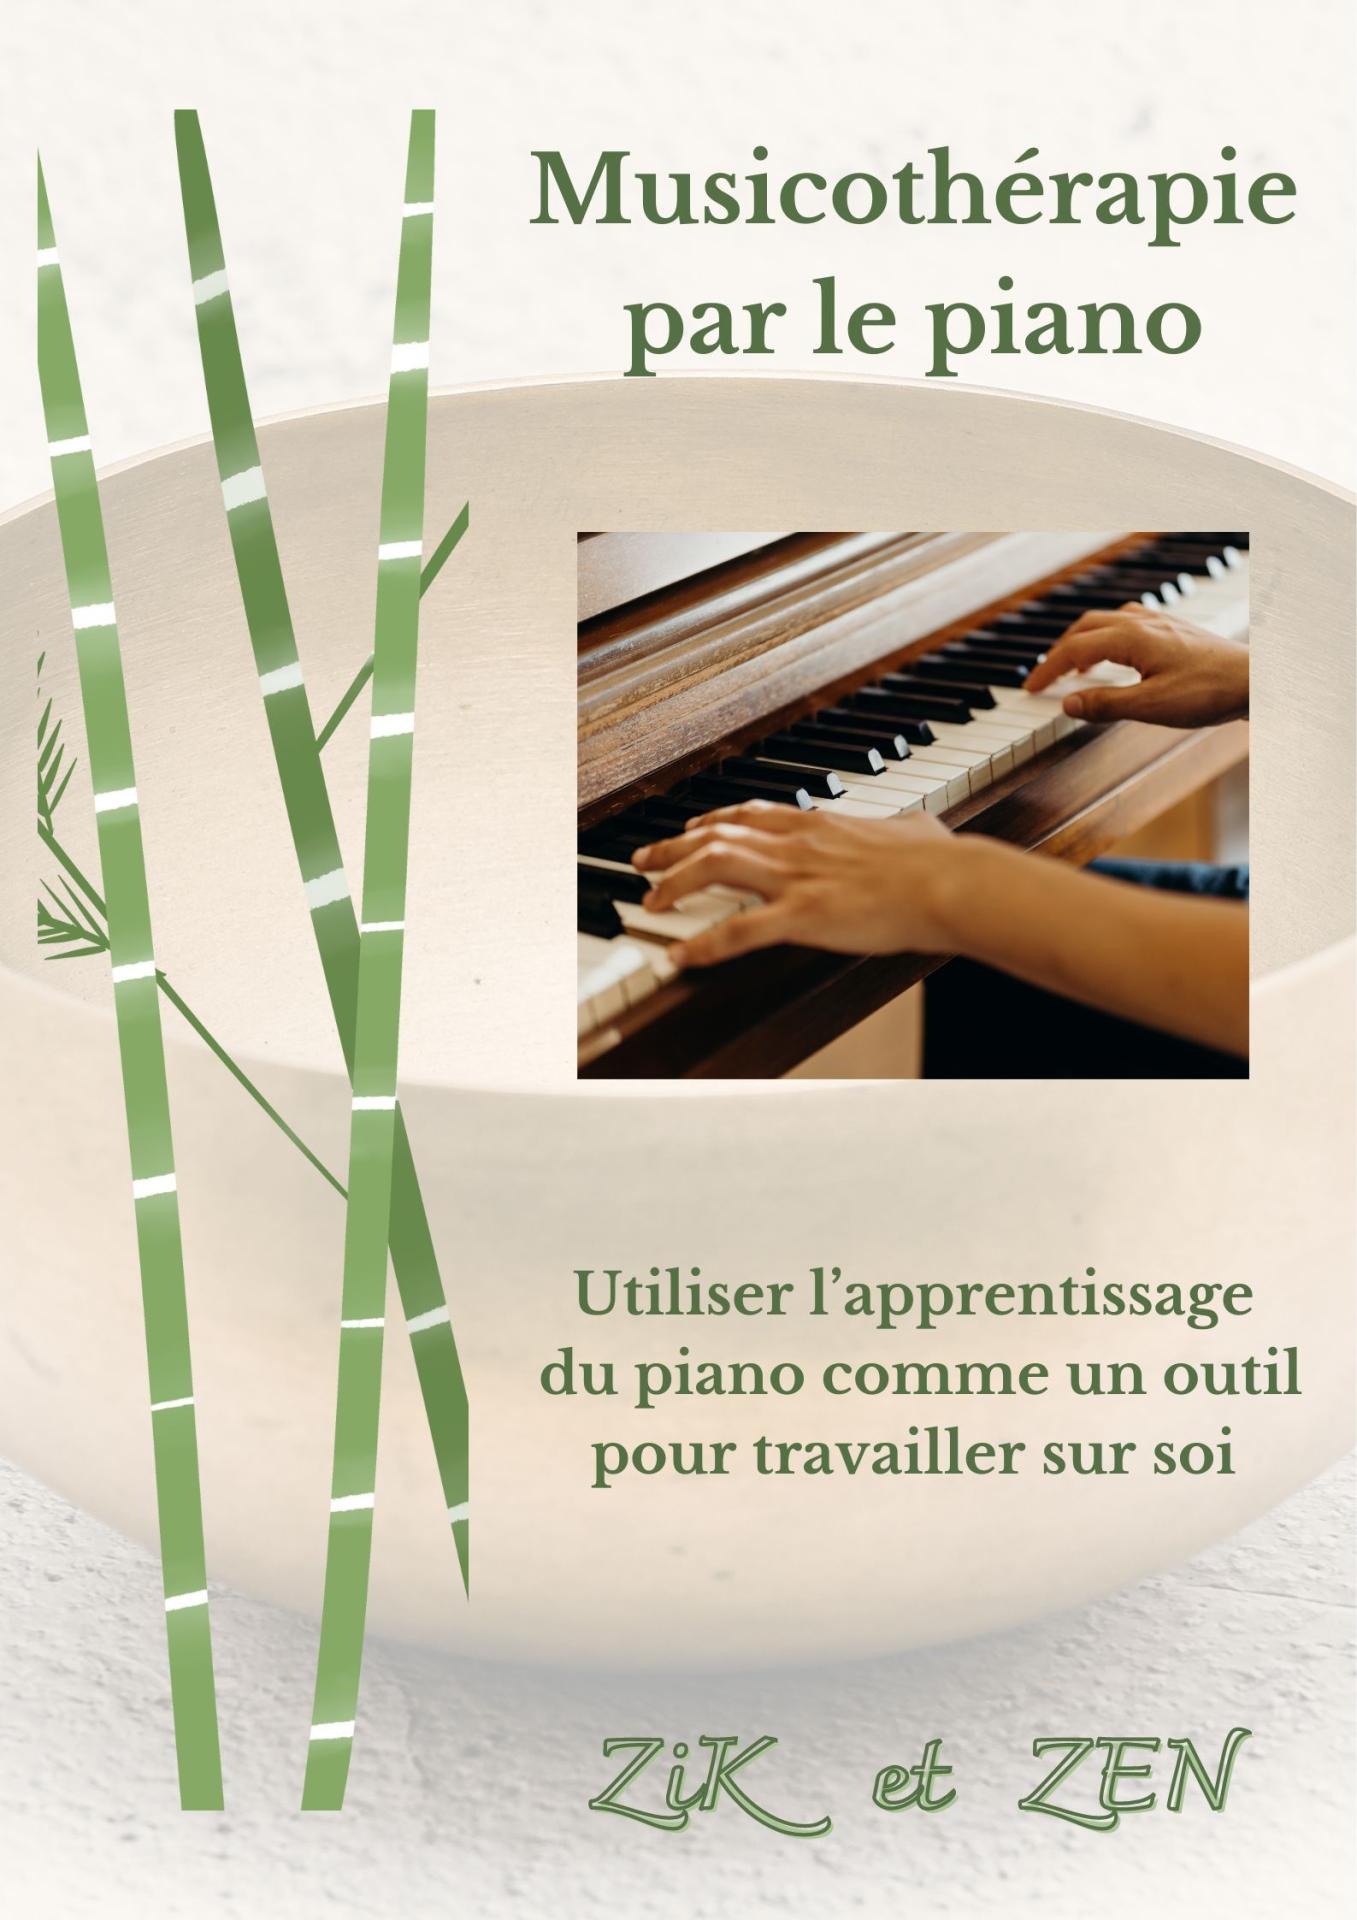 Accueil site musico par le piano